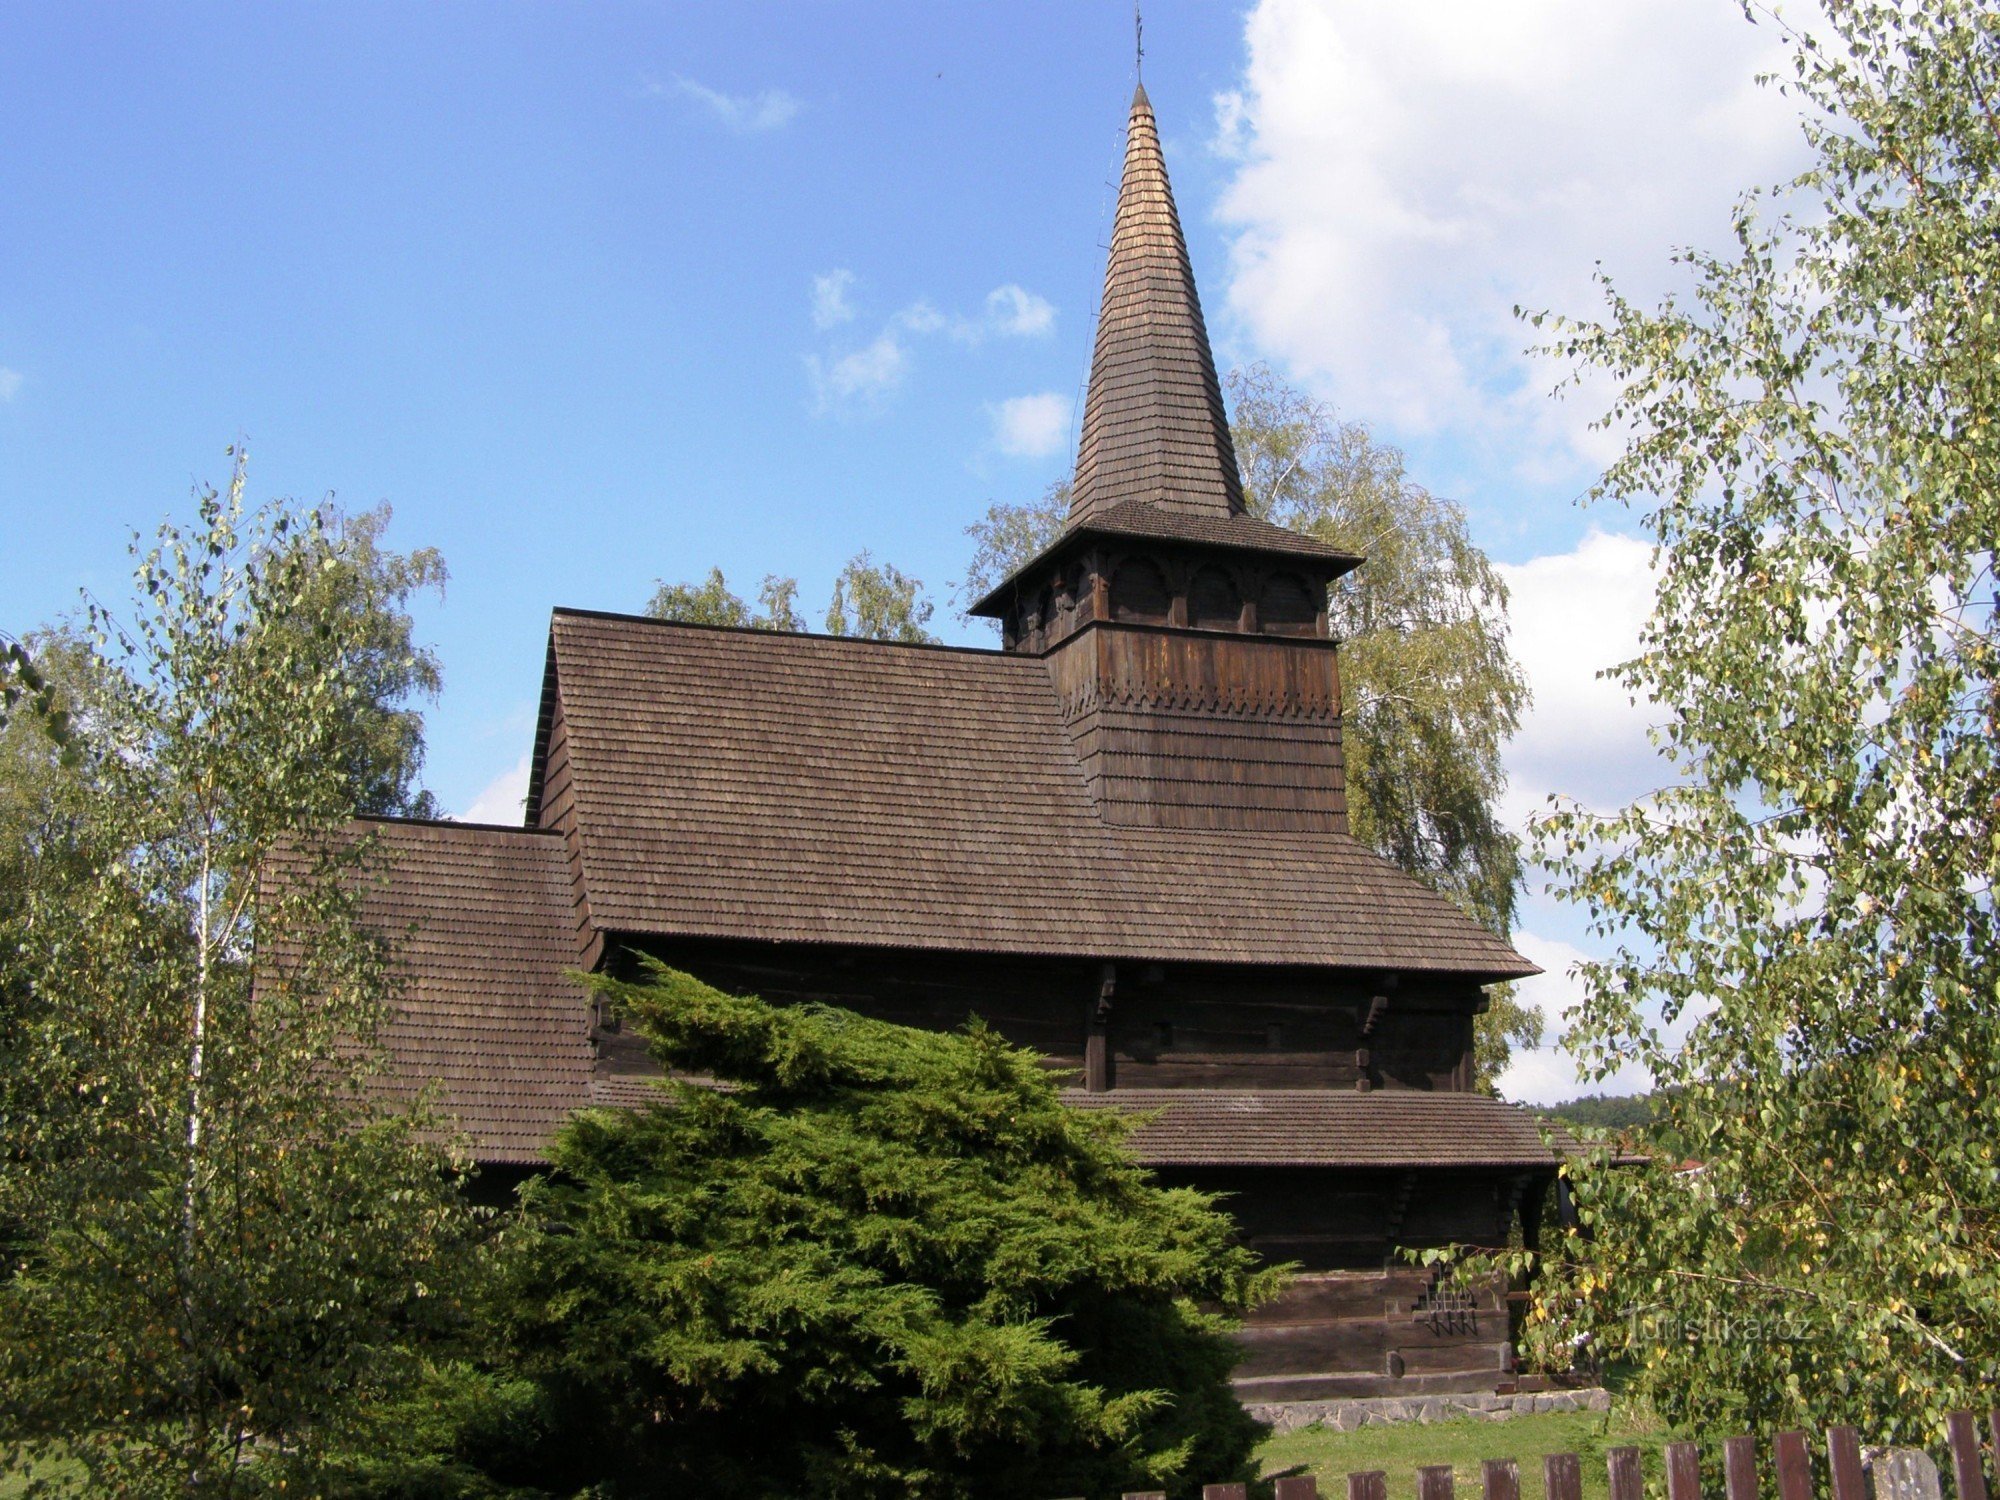 Dobříkov - drewniany kościół Wszystkich Świętych